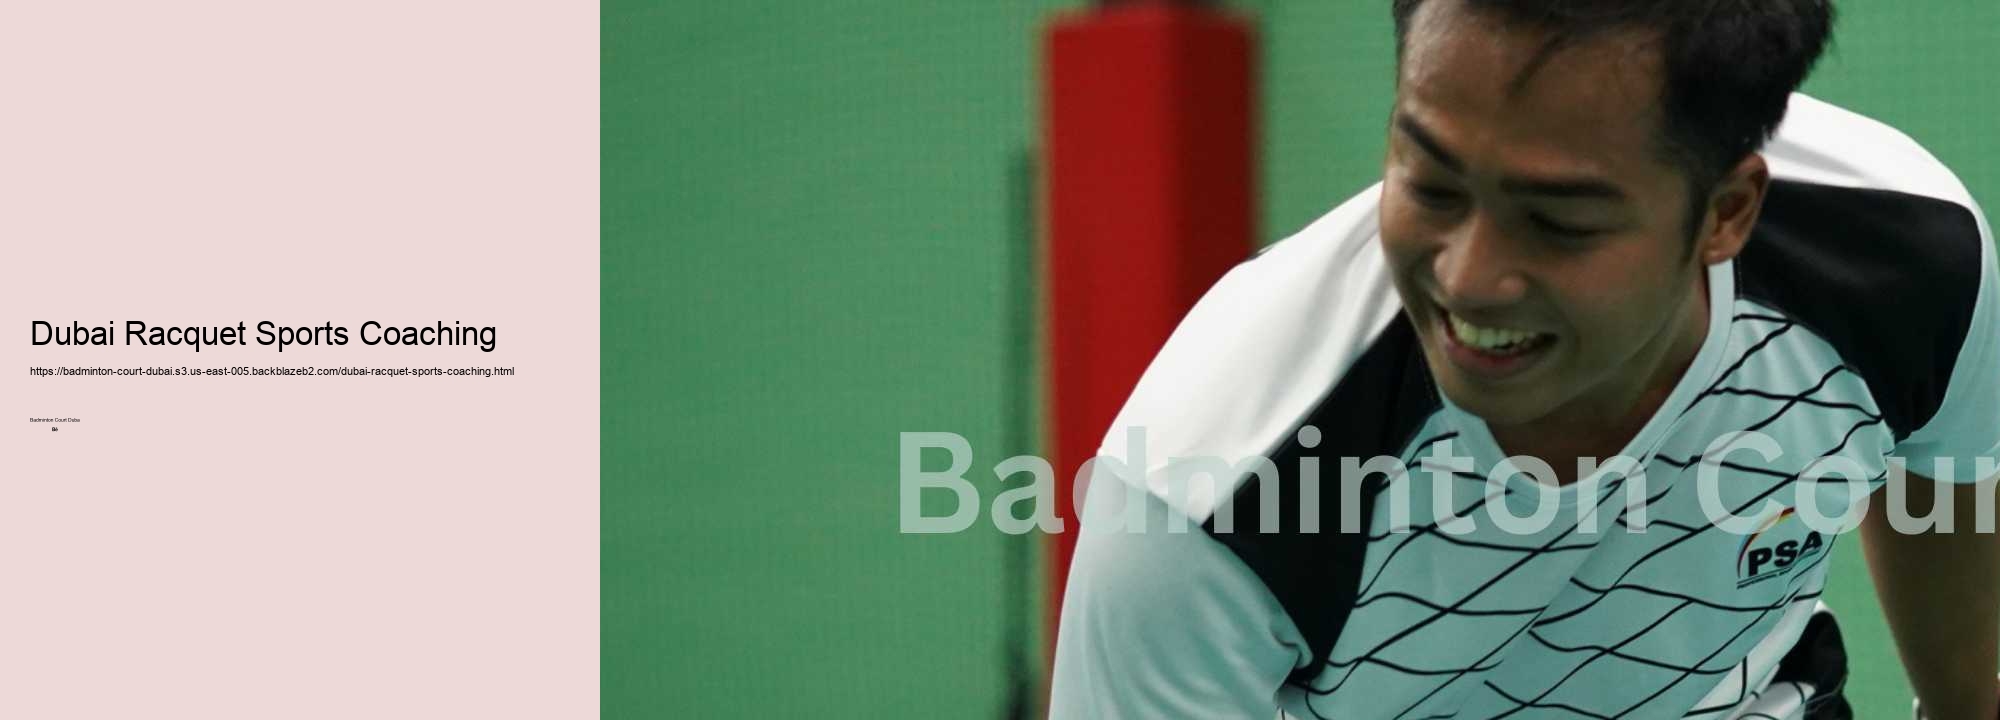 Dubai Racquet Sports Coaching